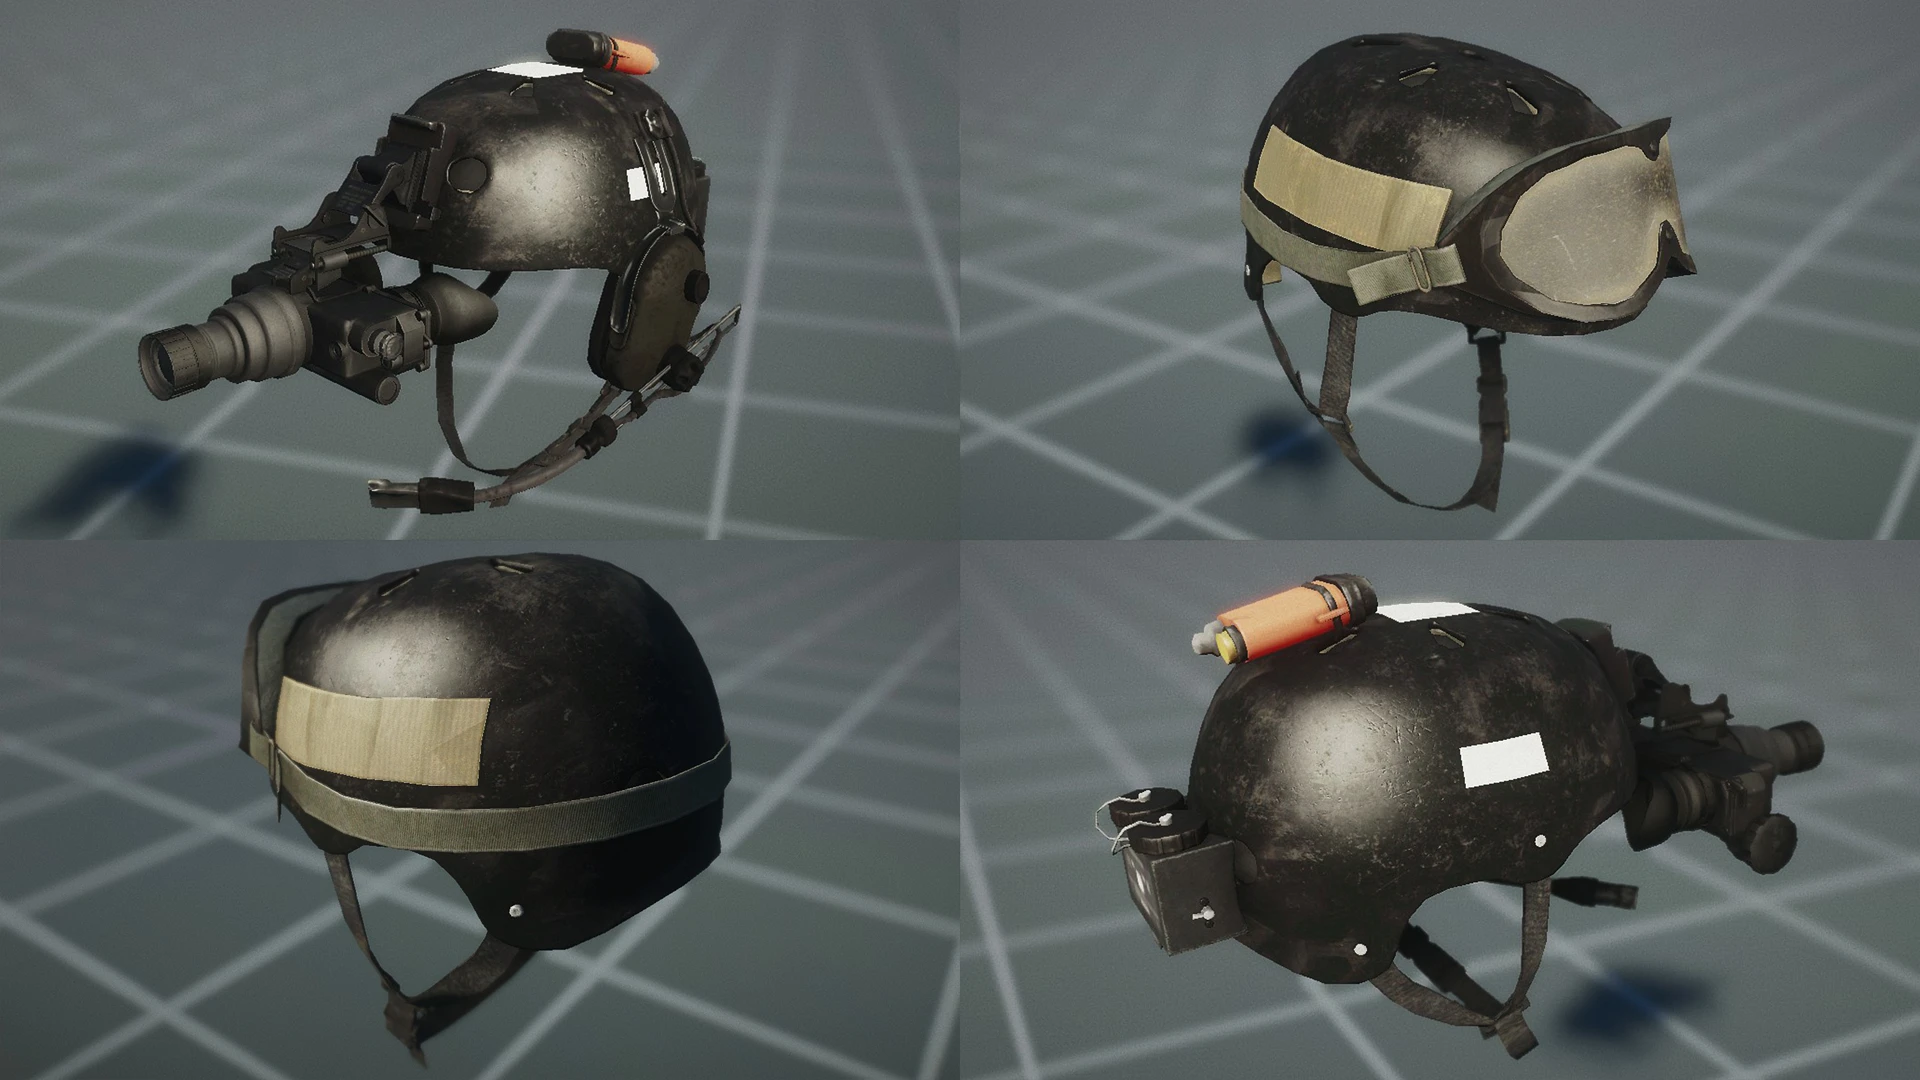 Pro-Tec Helmet - Retro Tactical Headgear at Fallout 4 Nexus - Mods